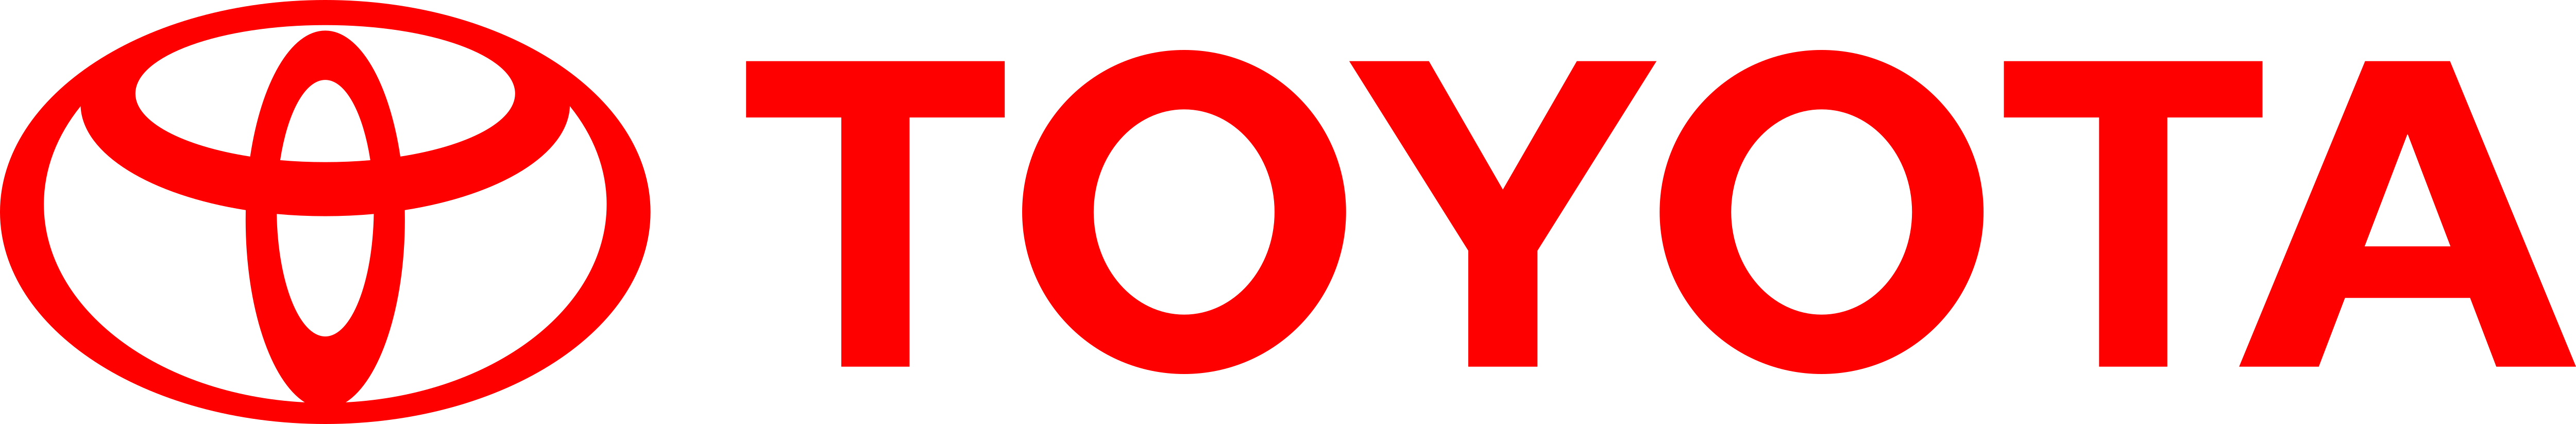 Toyota Logos Download